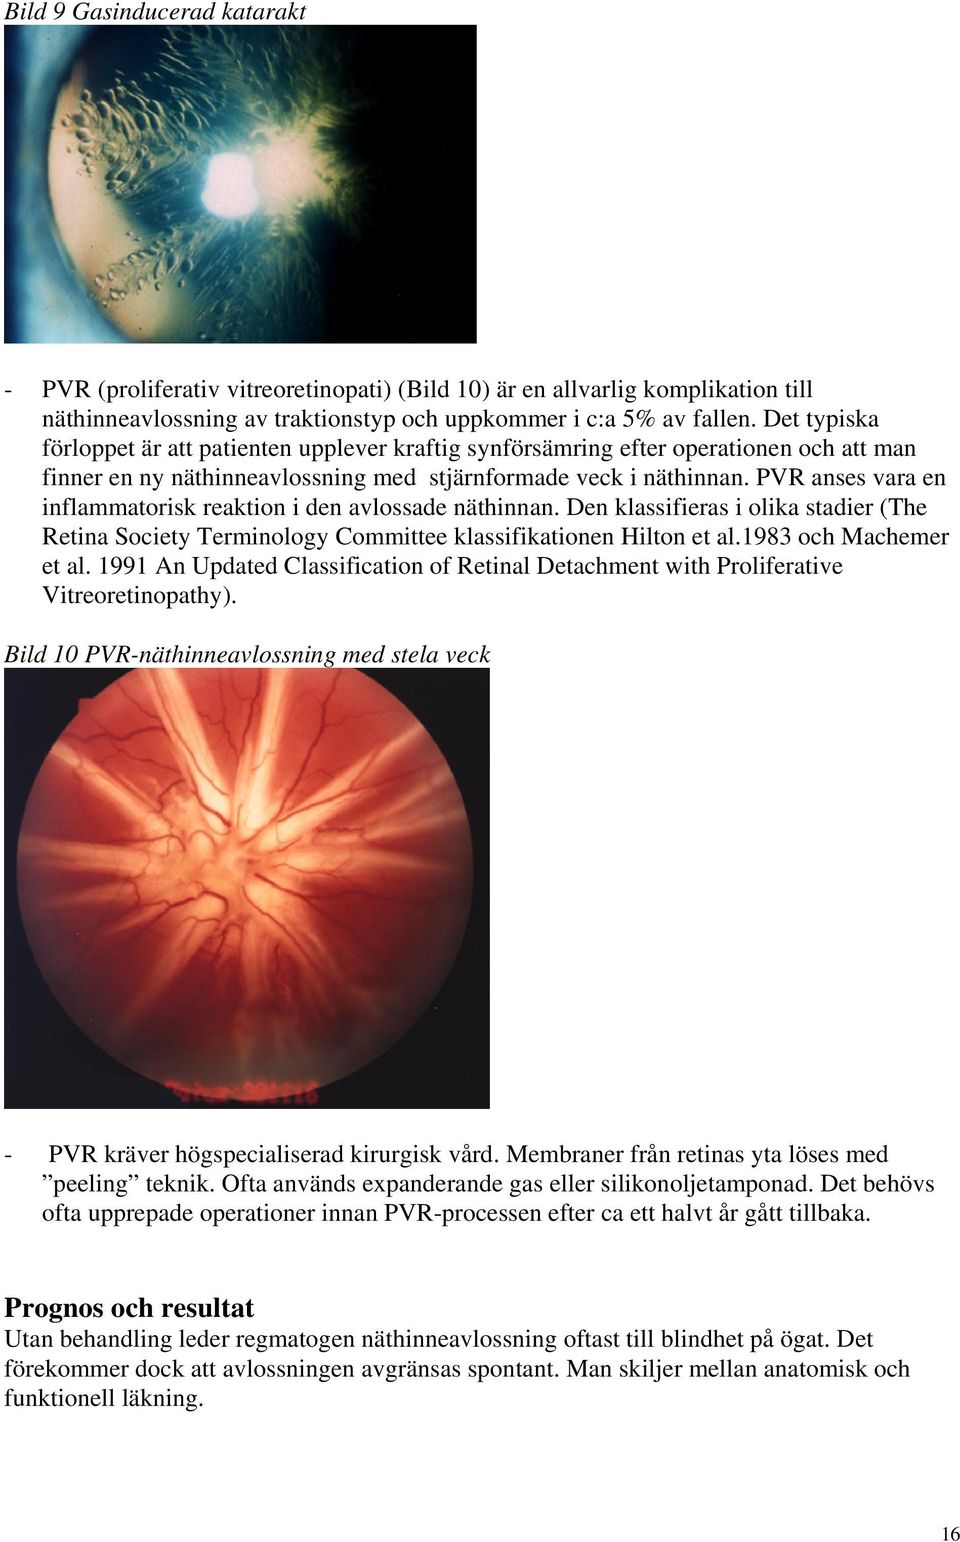 PVR anses vara en inflammatorisk reaktion i den avlossade näthinnan. Den klassifieras i olika stadier (The Retina Society Terminology Committee klassifikationen Hilton et al.1983 och Machemer et al.